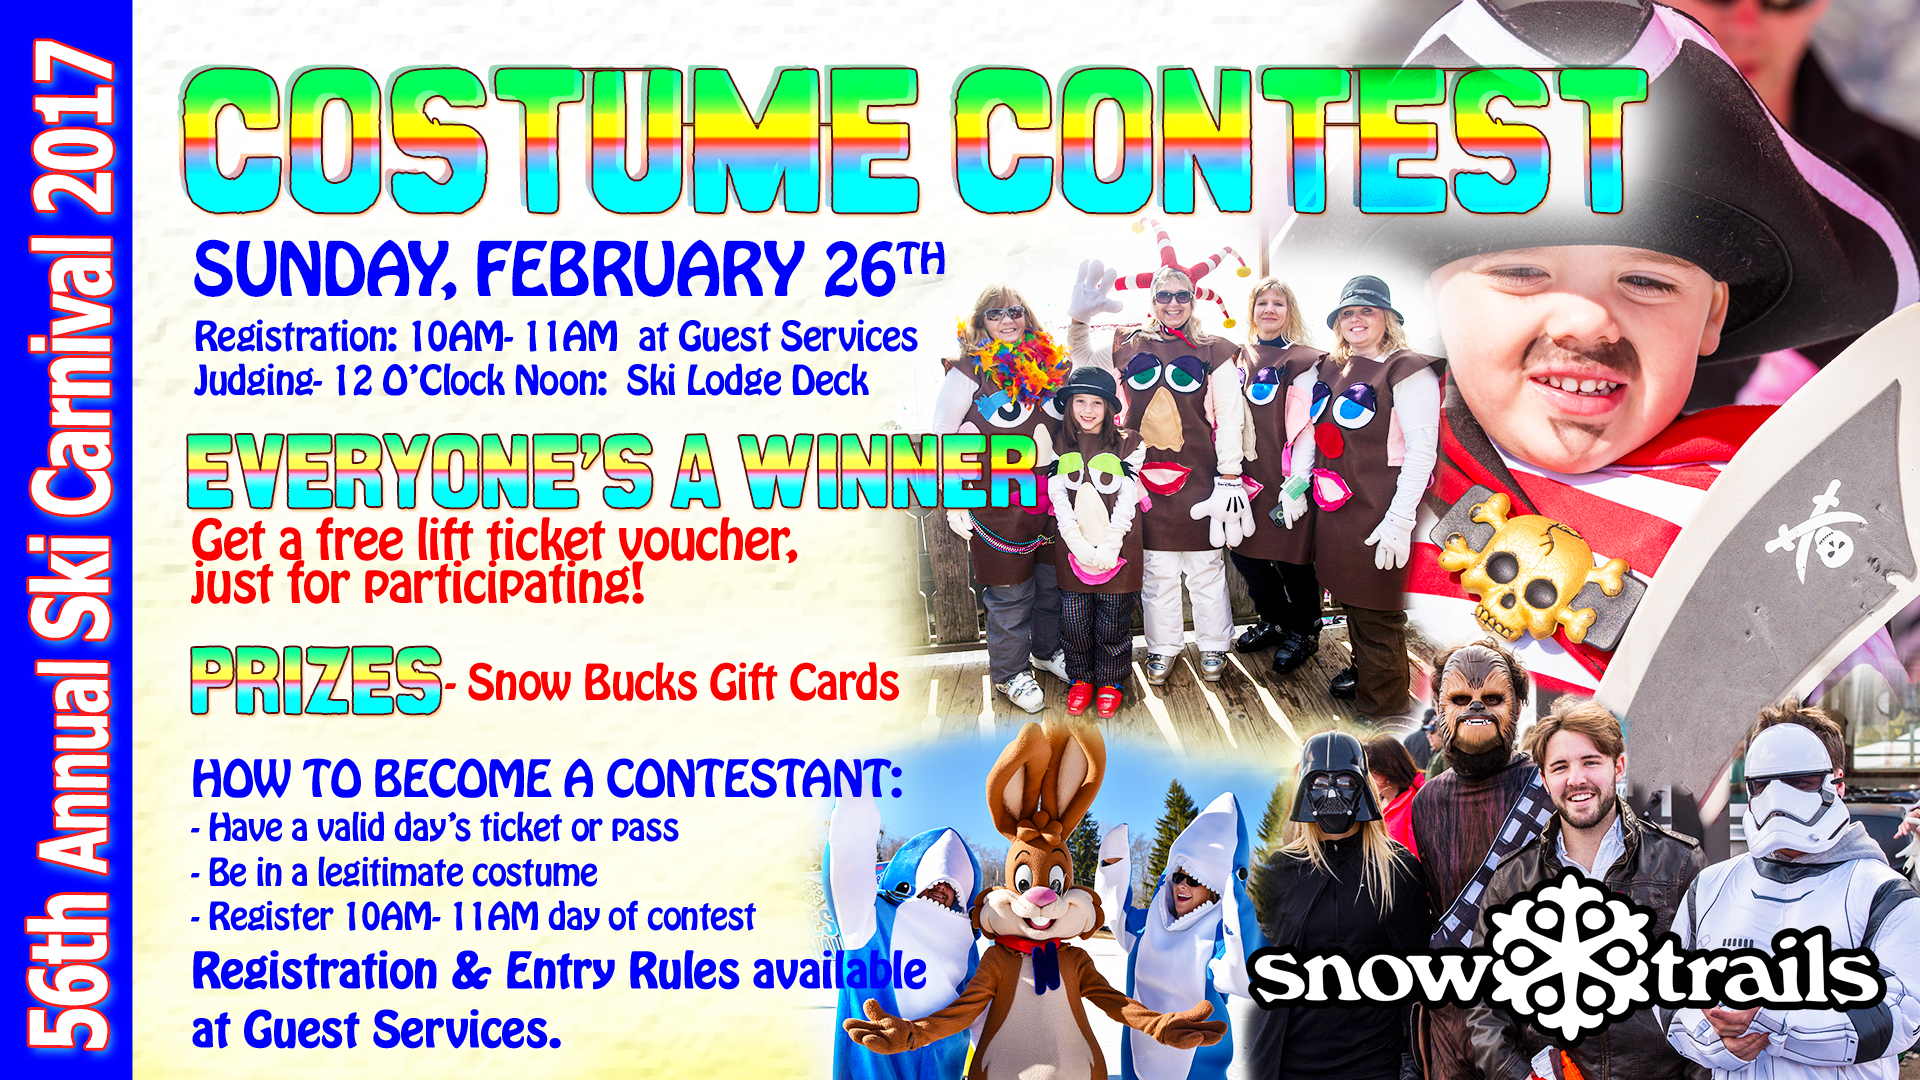 56th Annual Ski Carnival Costume Contest at Snow Trails in Mansfield, Ohio